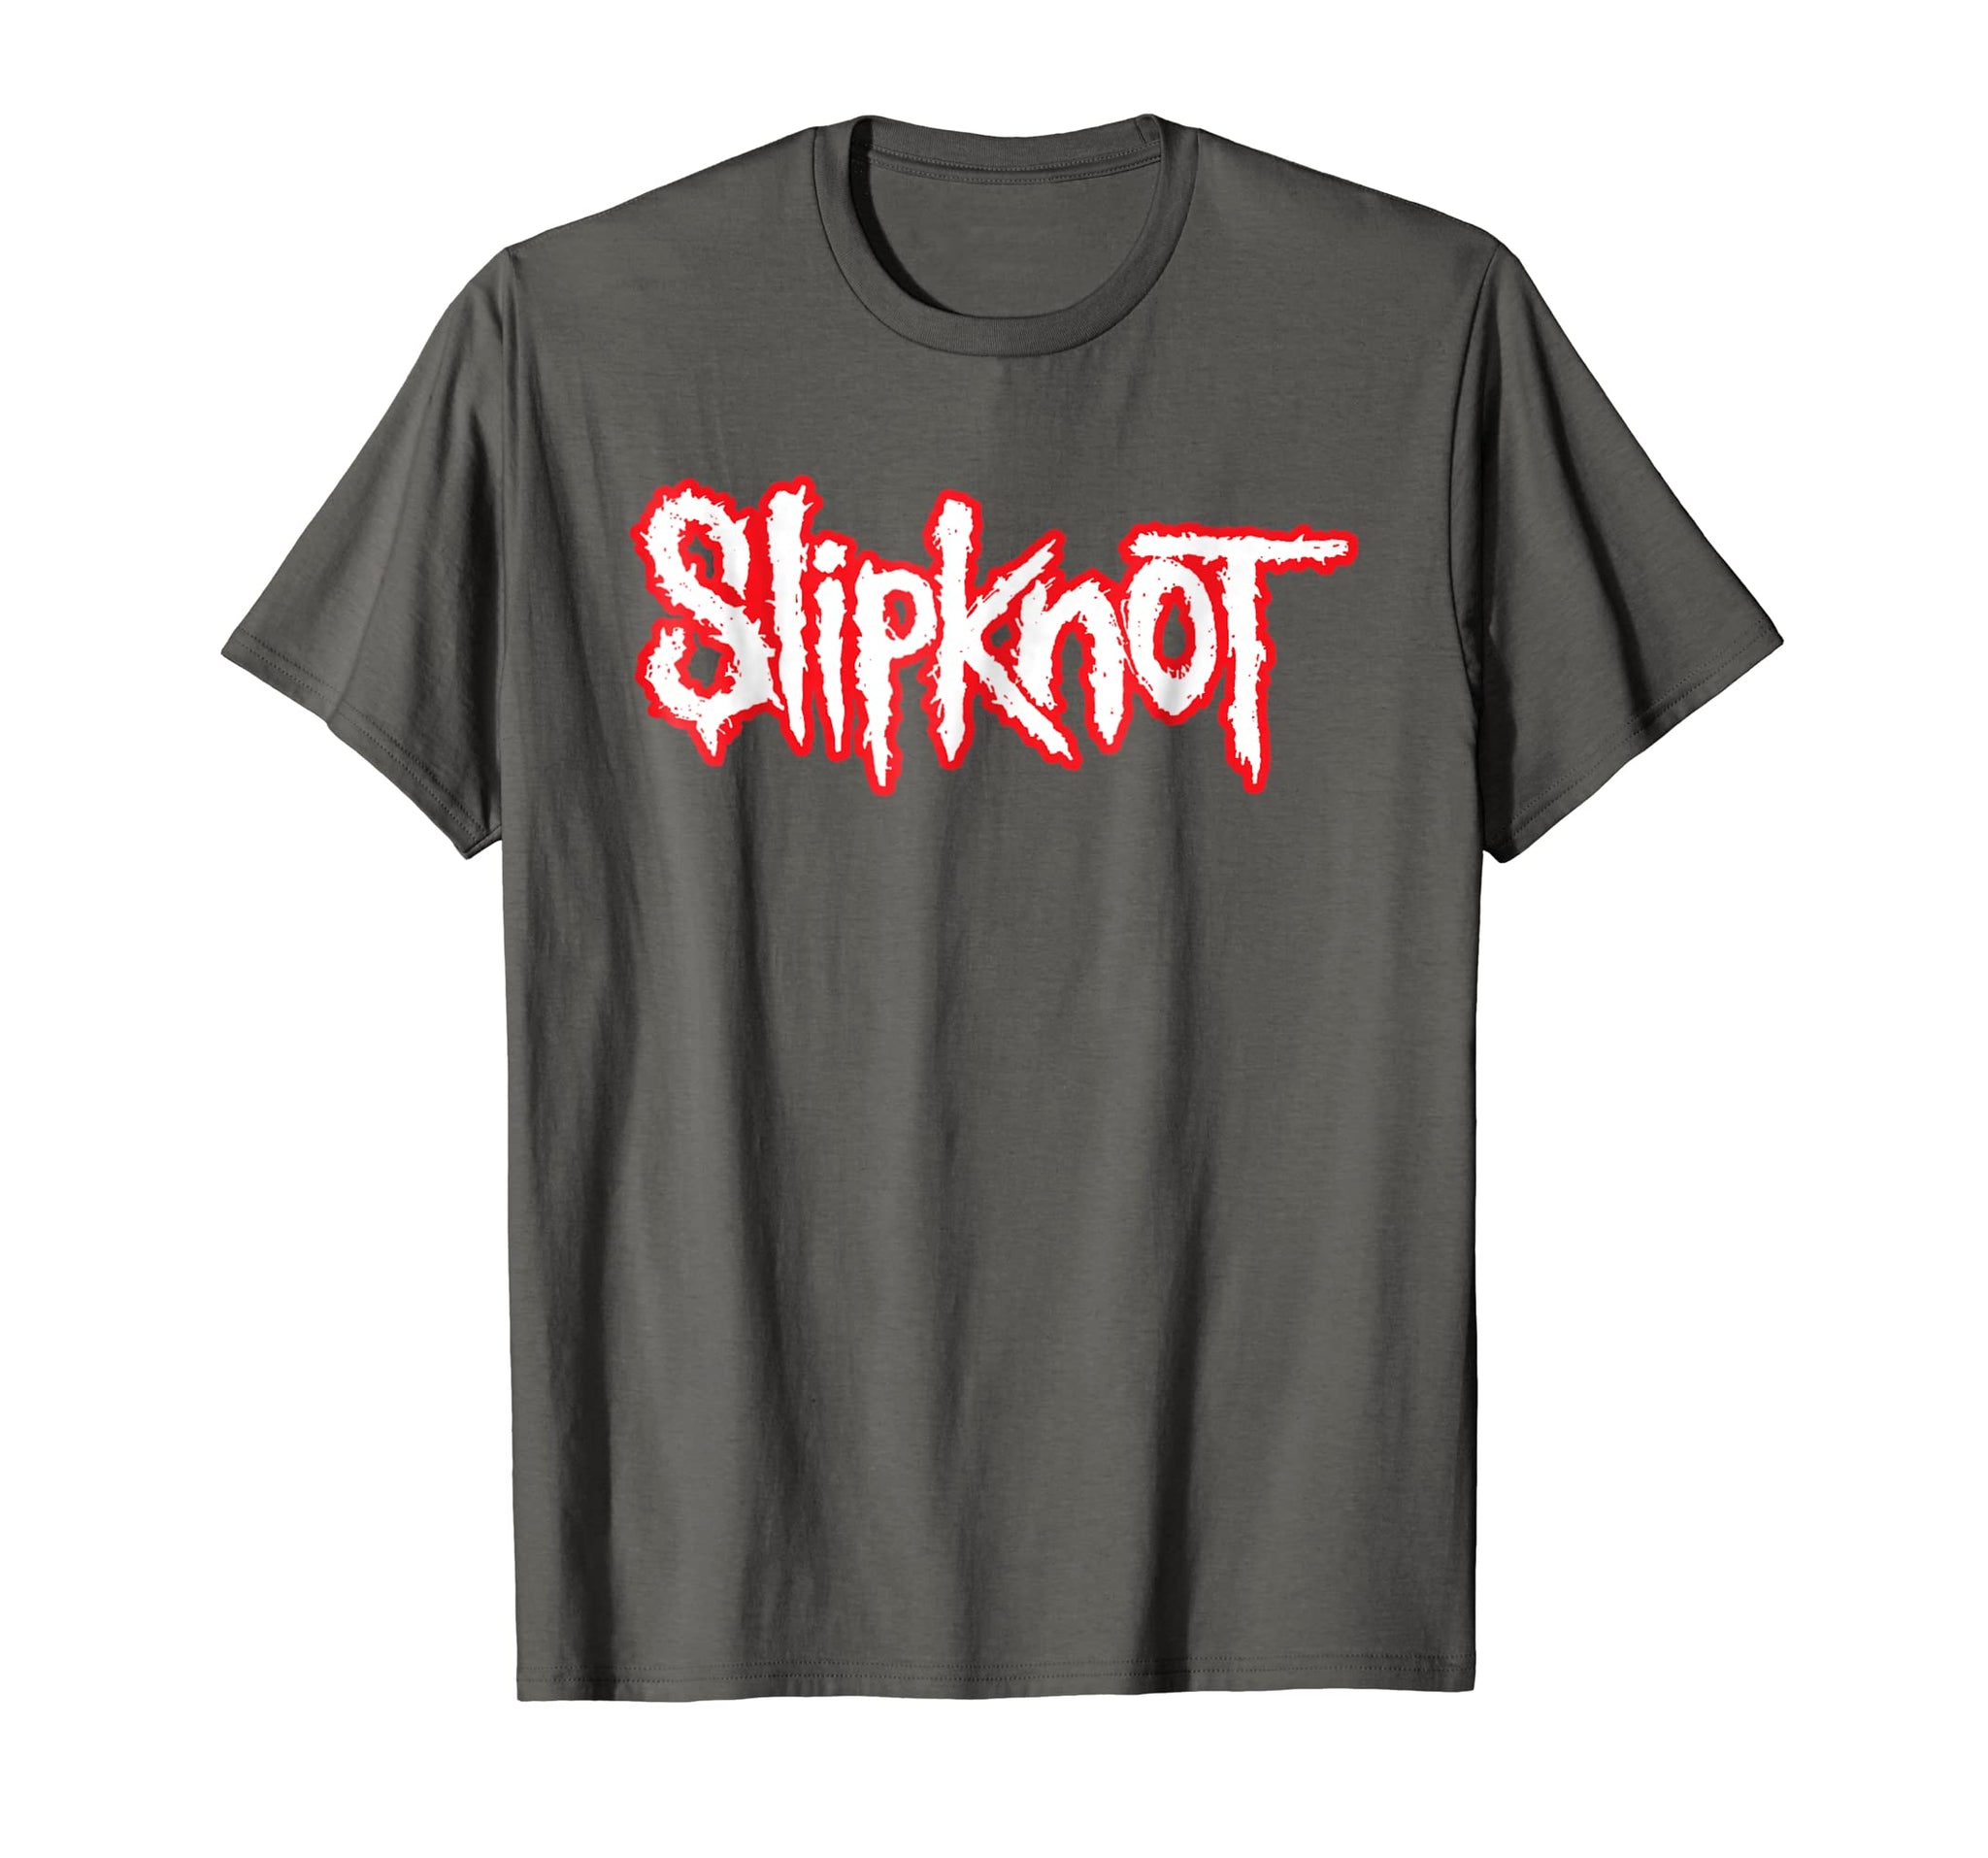 Slipknot T-Shirt – Australia